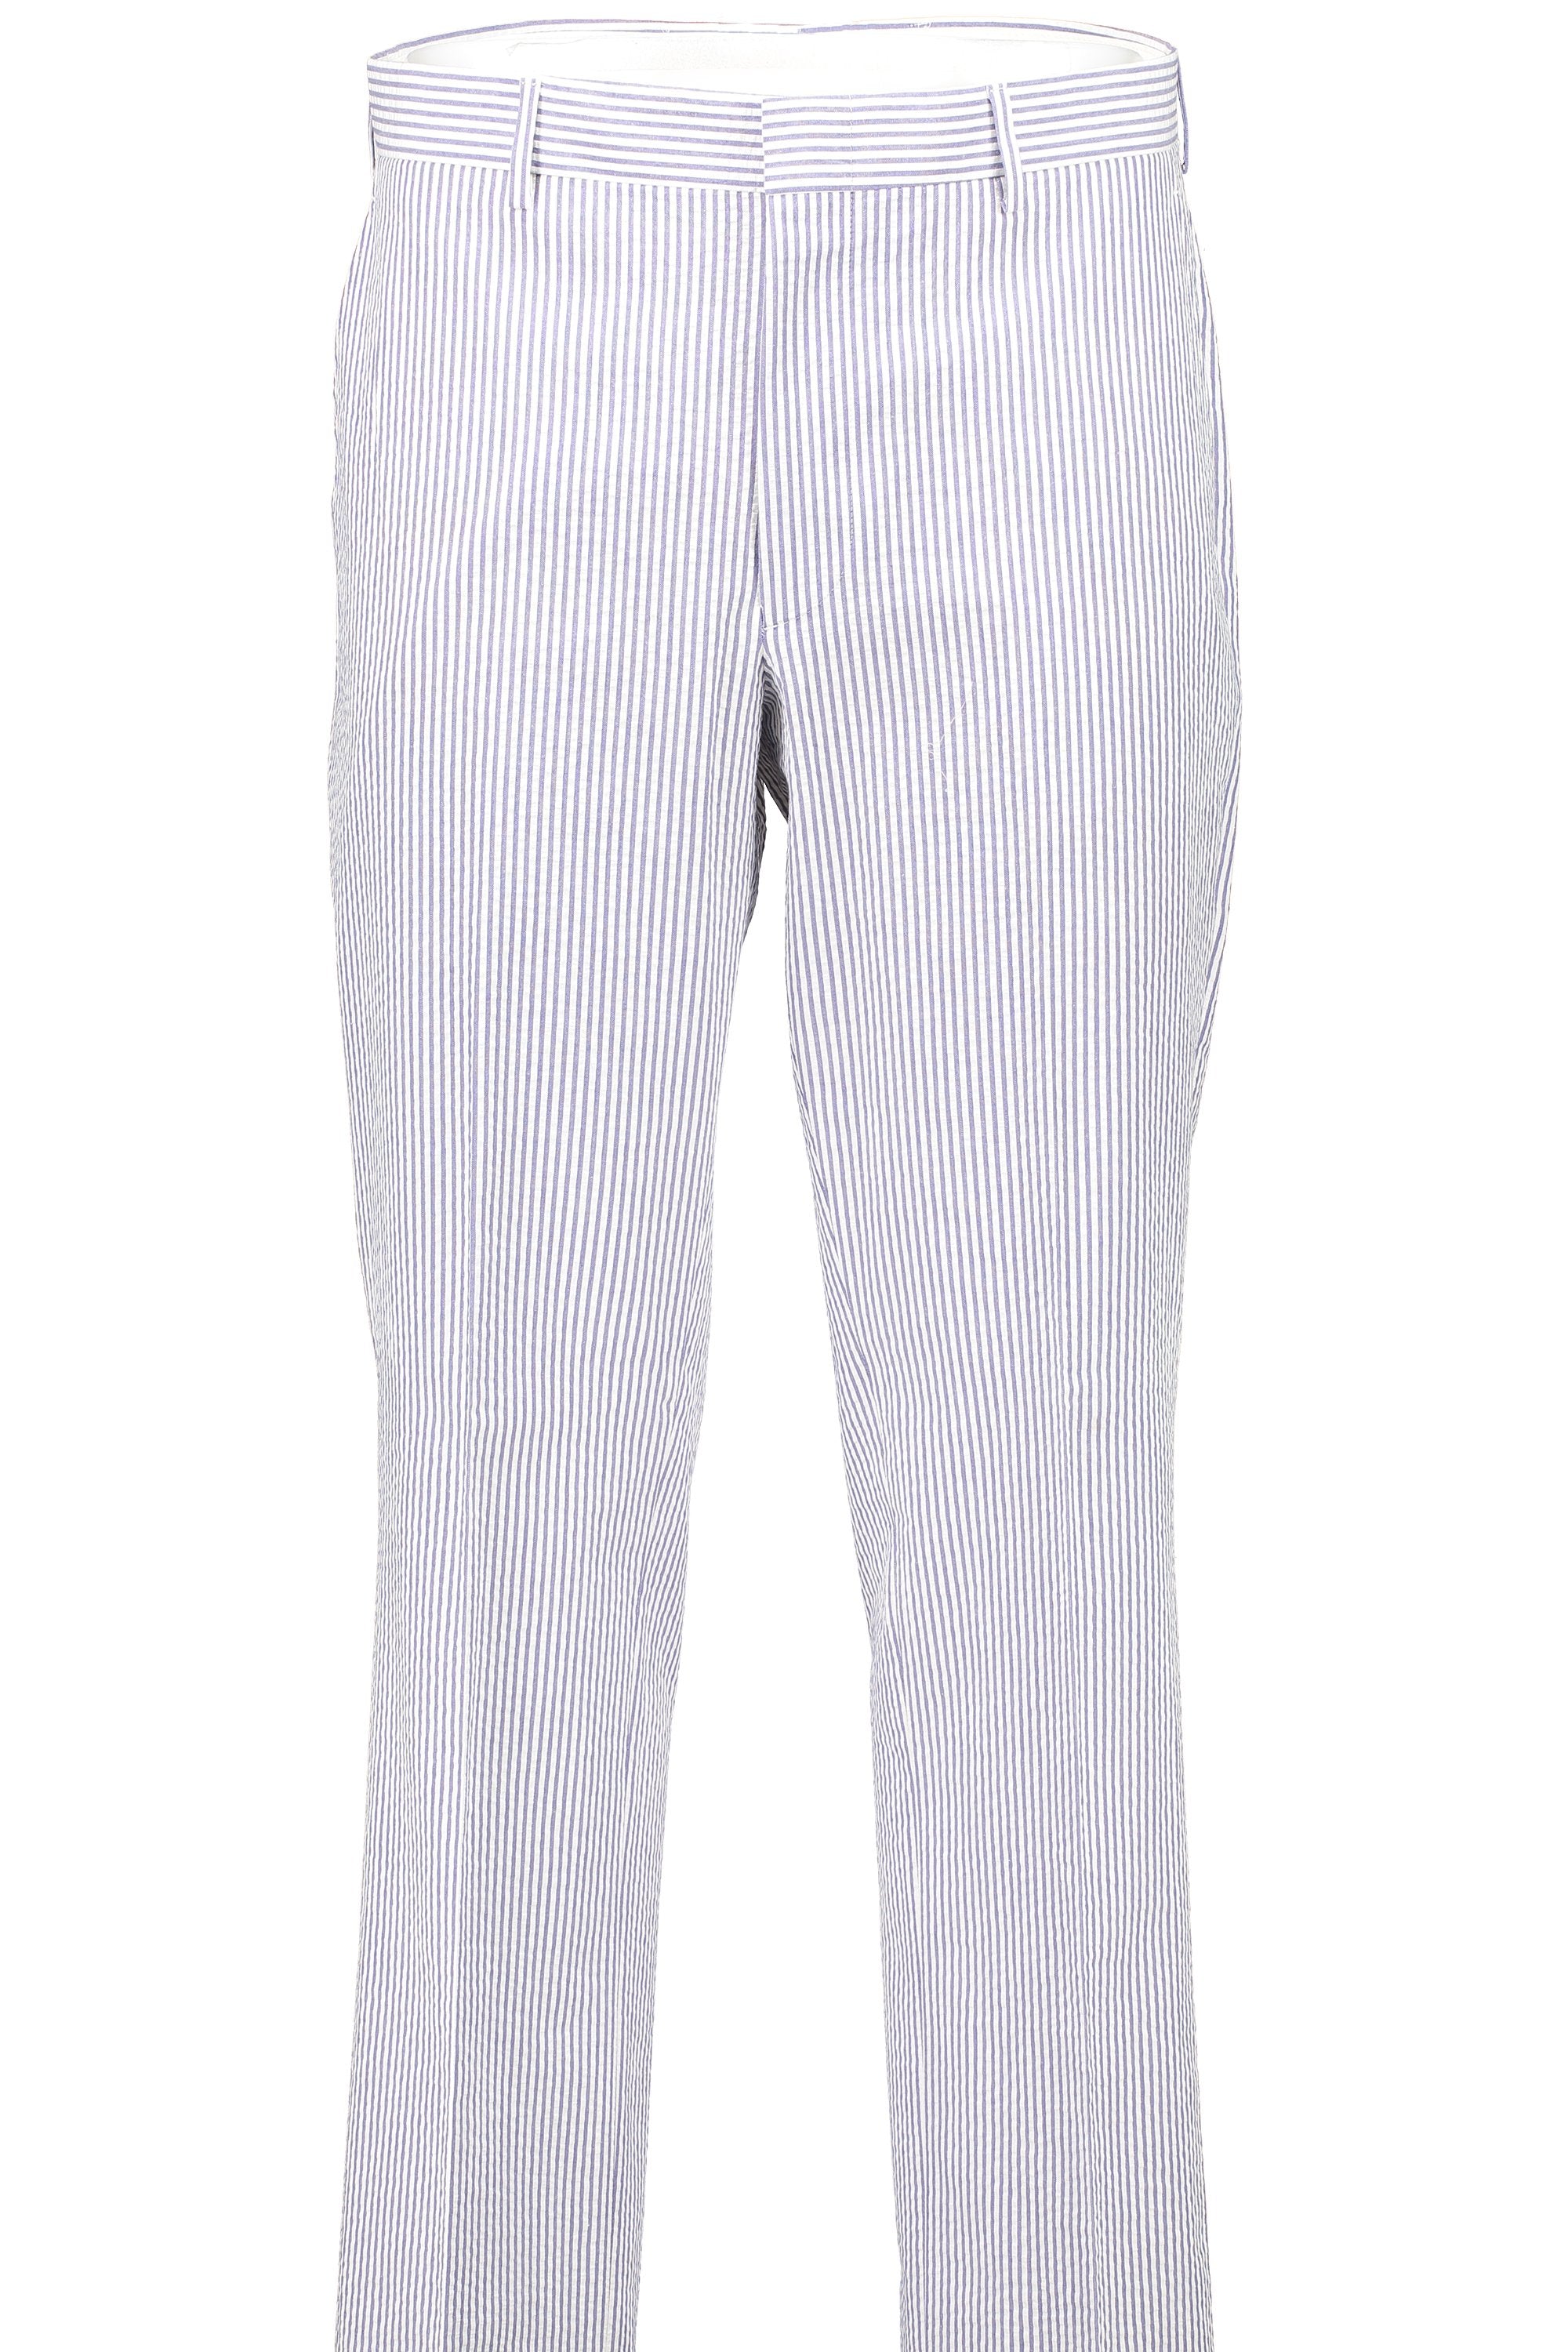 Men's Flat Front Pant - Suit Separate Classic Cut BLUE SEERSUCKER 100% COTTON